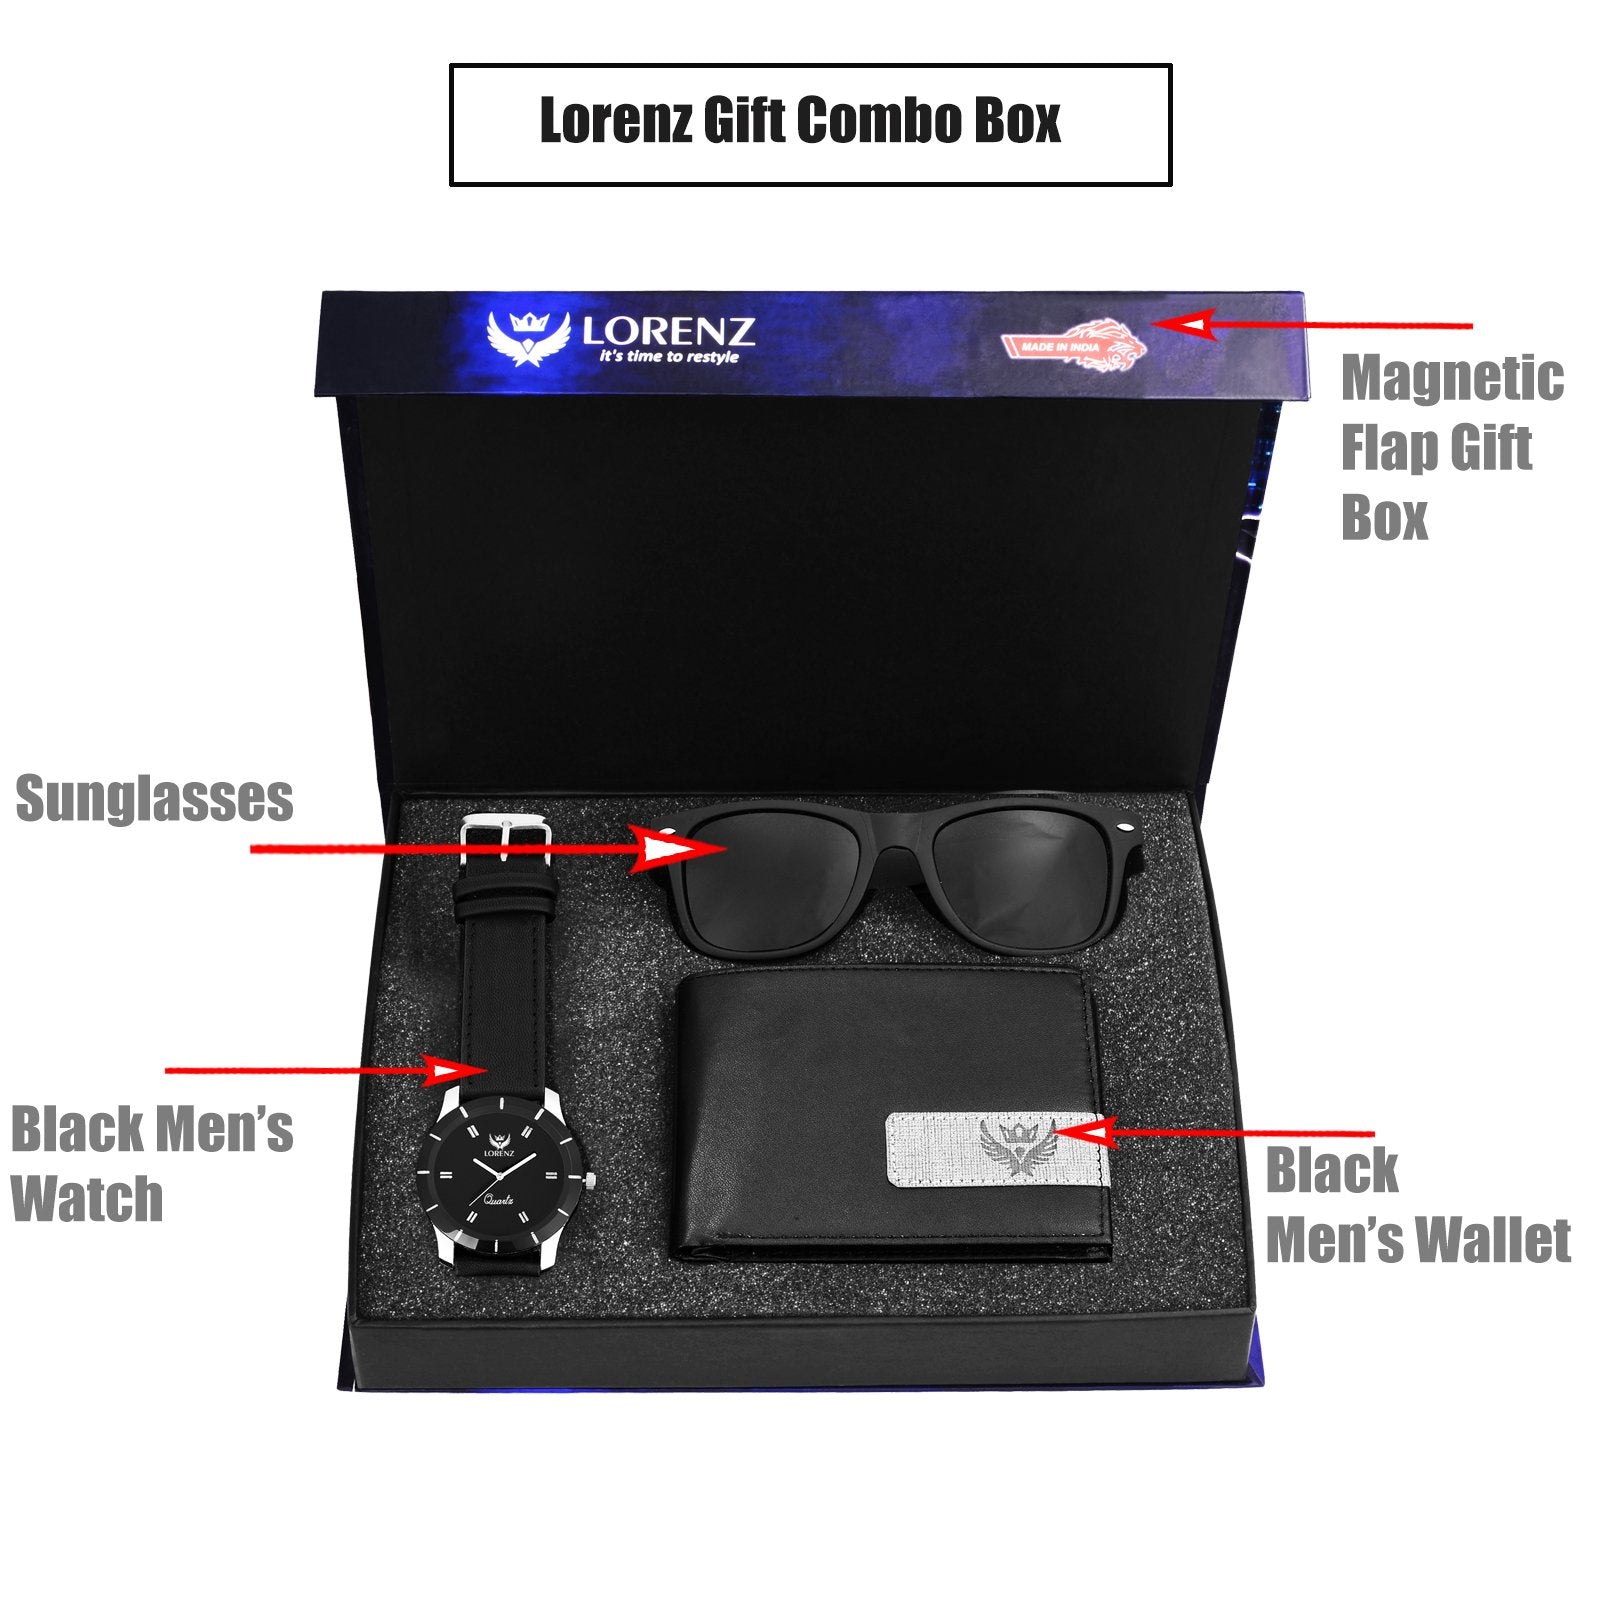 Lorenz Gift Combo Box